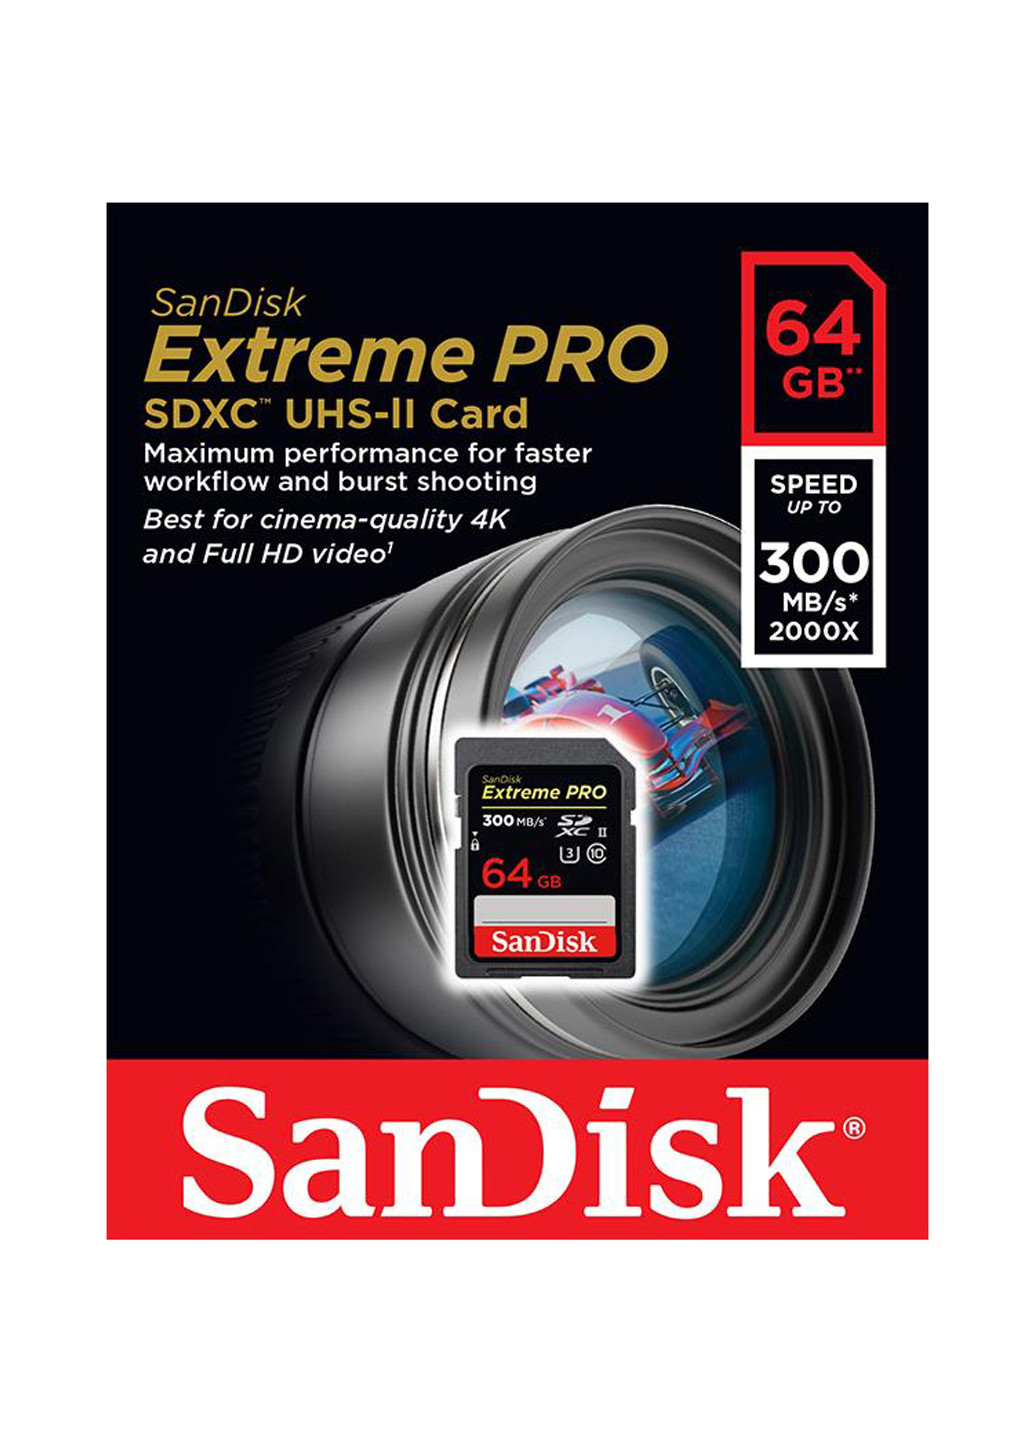 Карта памяти SDXC 64GB C10 UHS-II (R300/W260MB/s) 4K Extreme Pro (SDSDXPK-064G-GN4IN) SanDisk карта памяти sandisk sdxc 64gb c10 uhs-ii (r300/w260mb/s) 4k extreme pro (sdsdxpk-064g-gn4in) (130843110)